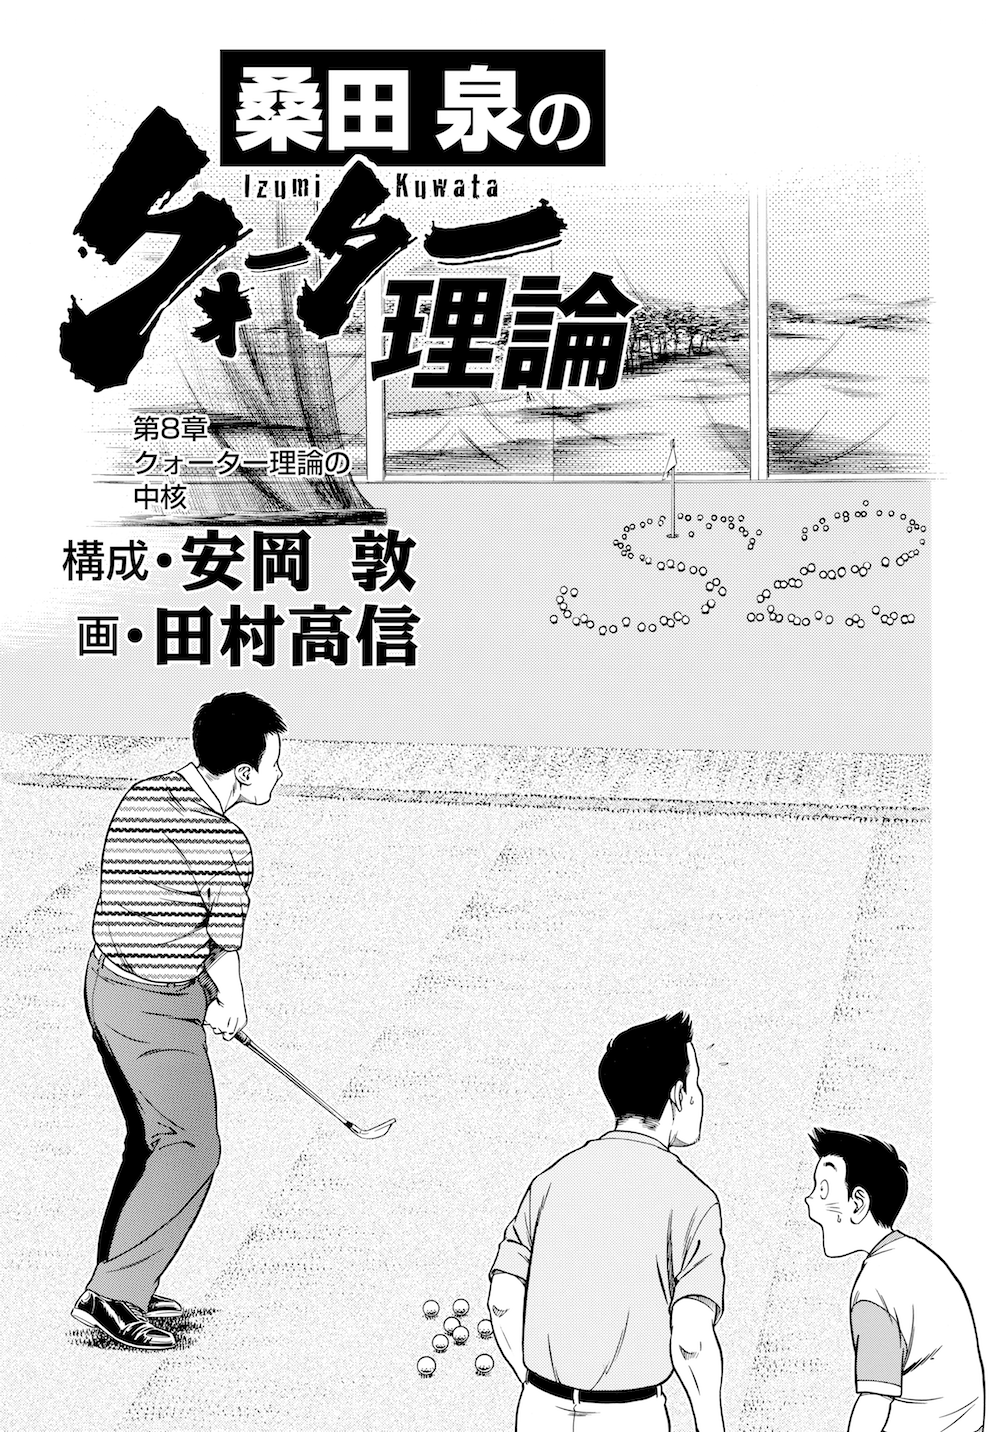 桑田泉のクォーター理論でゴルフが変わる Vol.3実践編『ロングゲーム